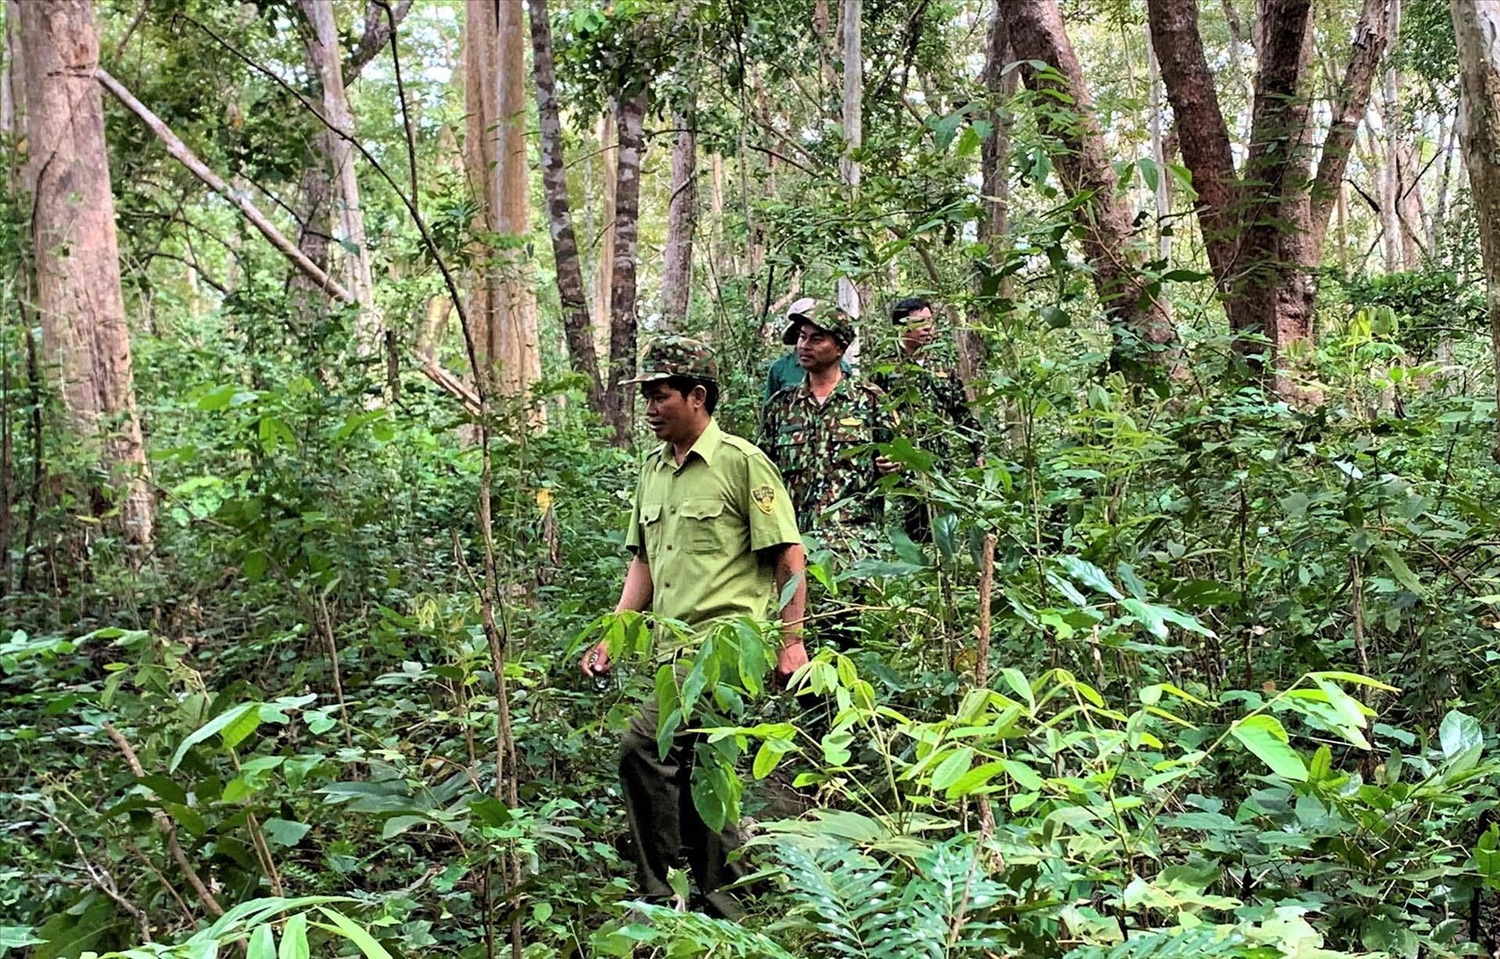 Để hạn chế tình trạng phá rừng vào những tháng cuối năm, công ty đẩy mạnh công tác tuần tra bảo vệ